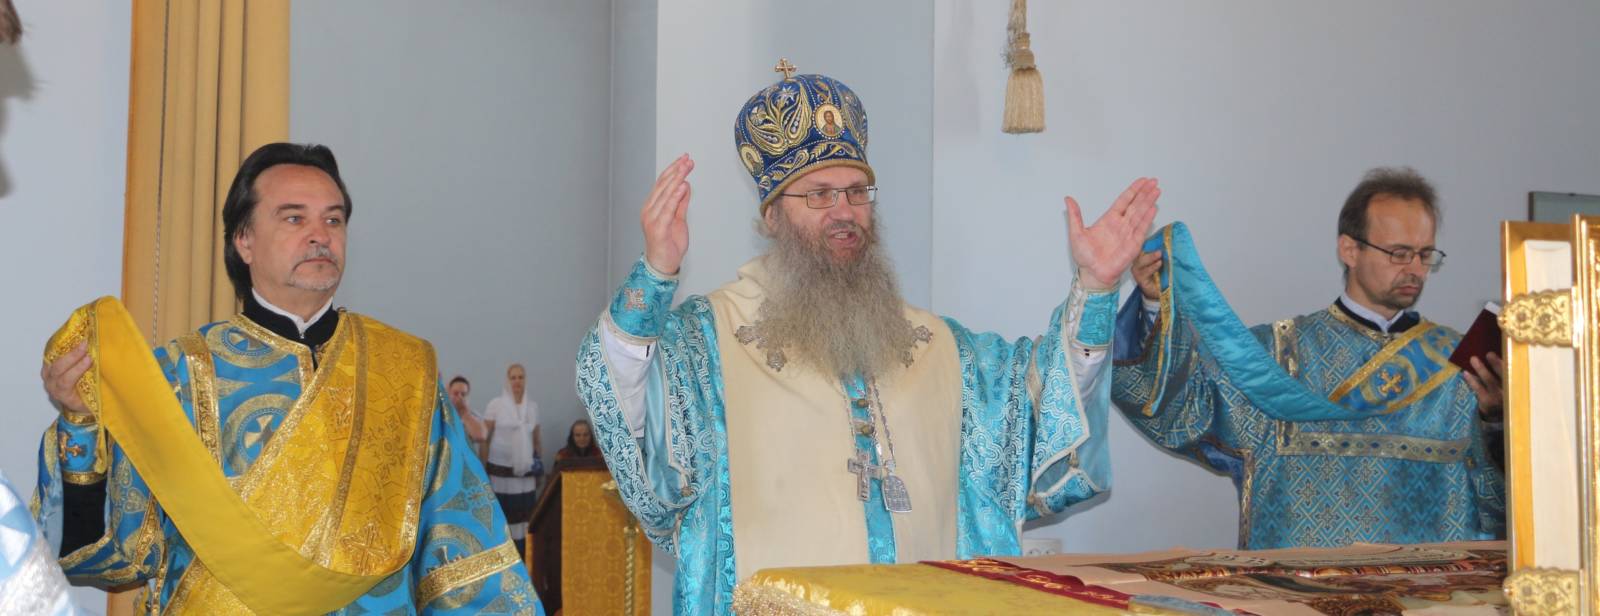 Служение епископа Елисея в день празднования Тихвинской иконы Божией Матери.